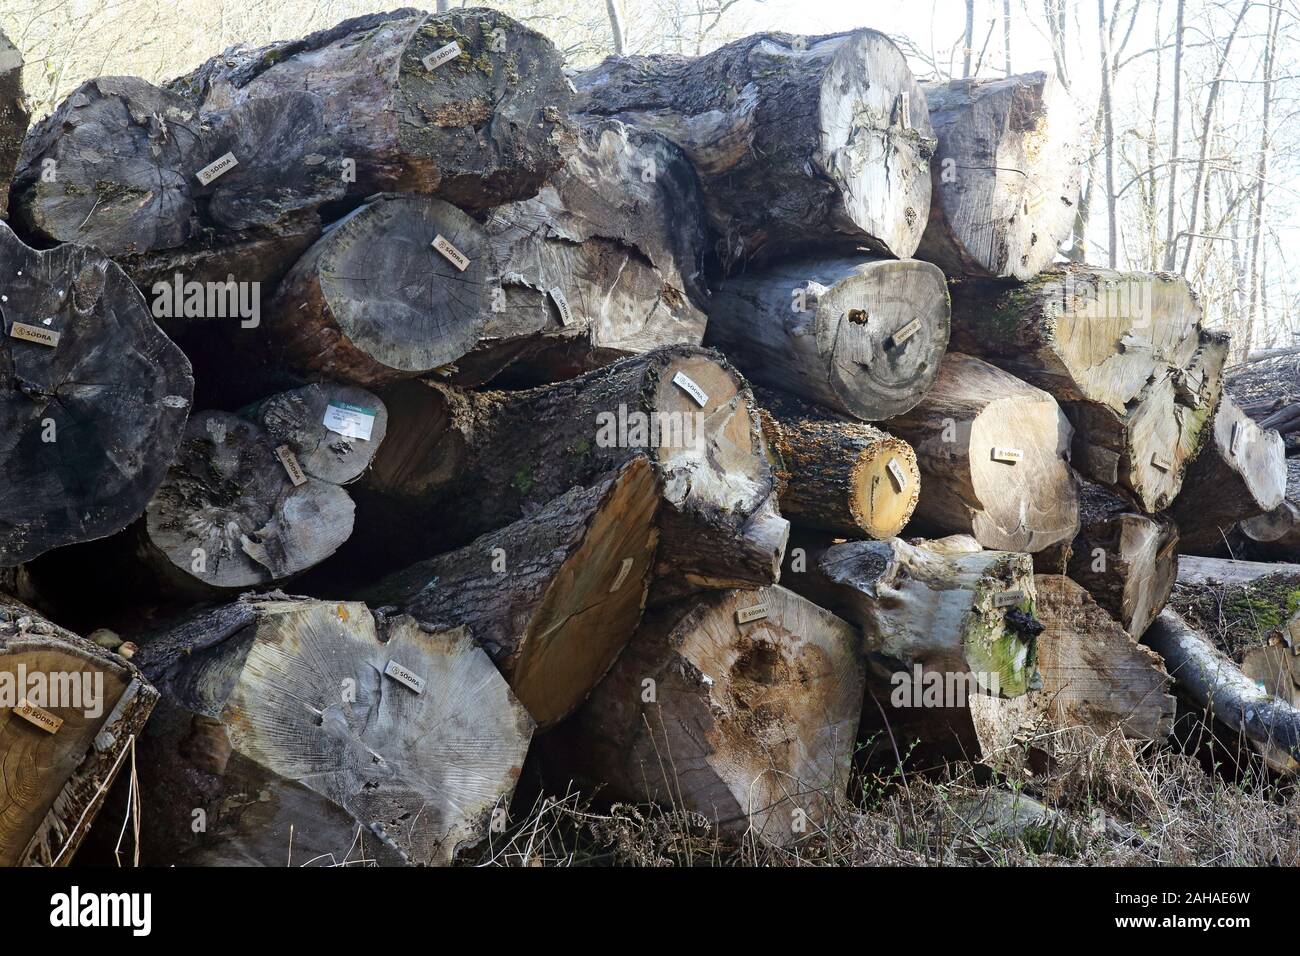 14.04.2017, Hovmantorp, Kronobergs laen, Suède - les troncs des arbres de la société forestière Soedra sont prêts pour la collecte. 00S170414D061CAROEX.JPG [MODEL Banque D'Images